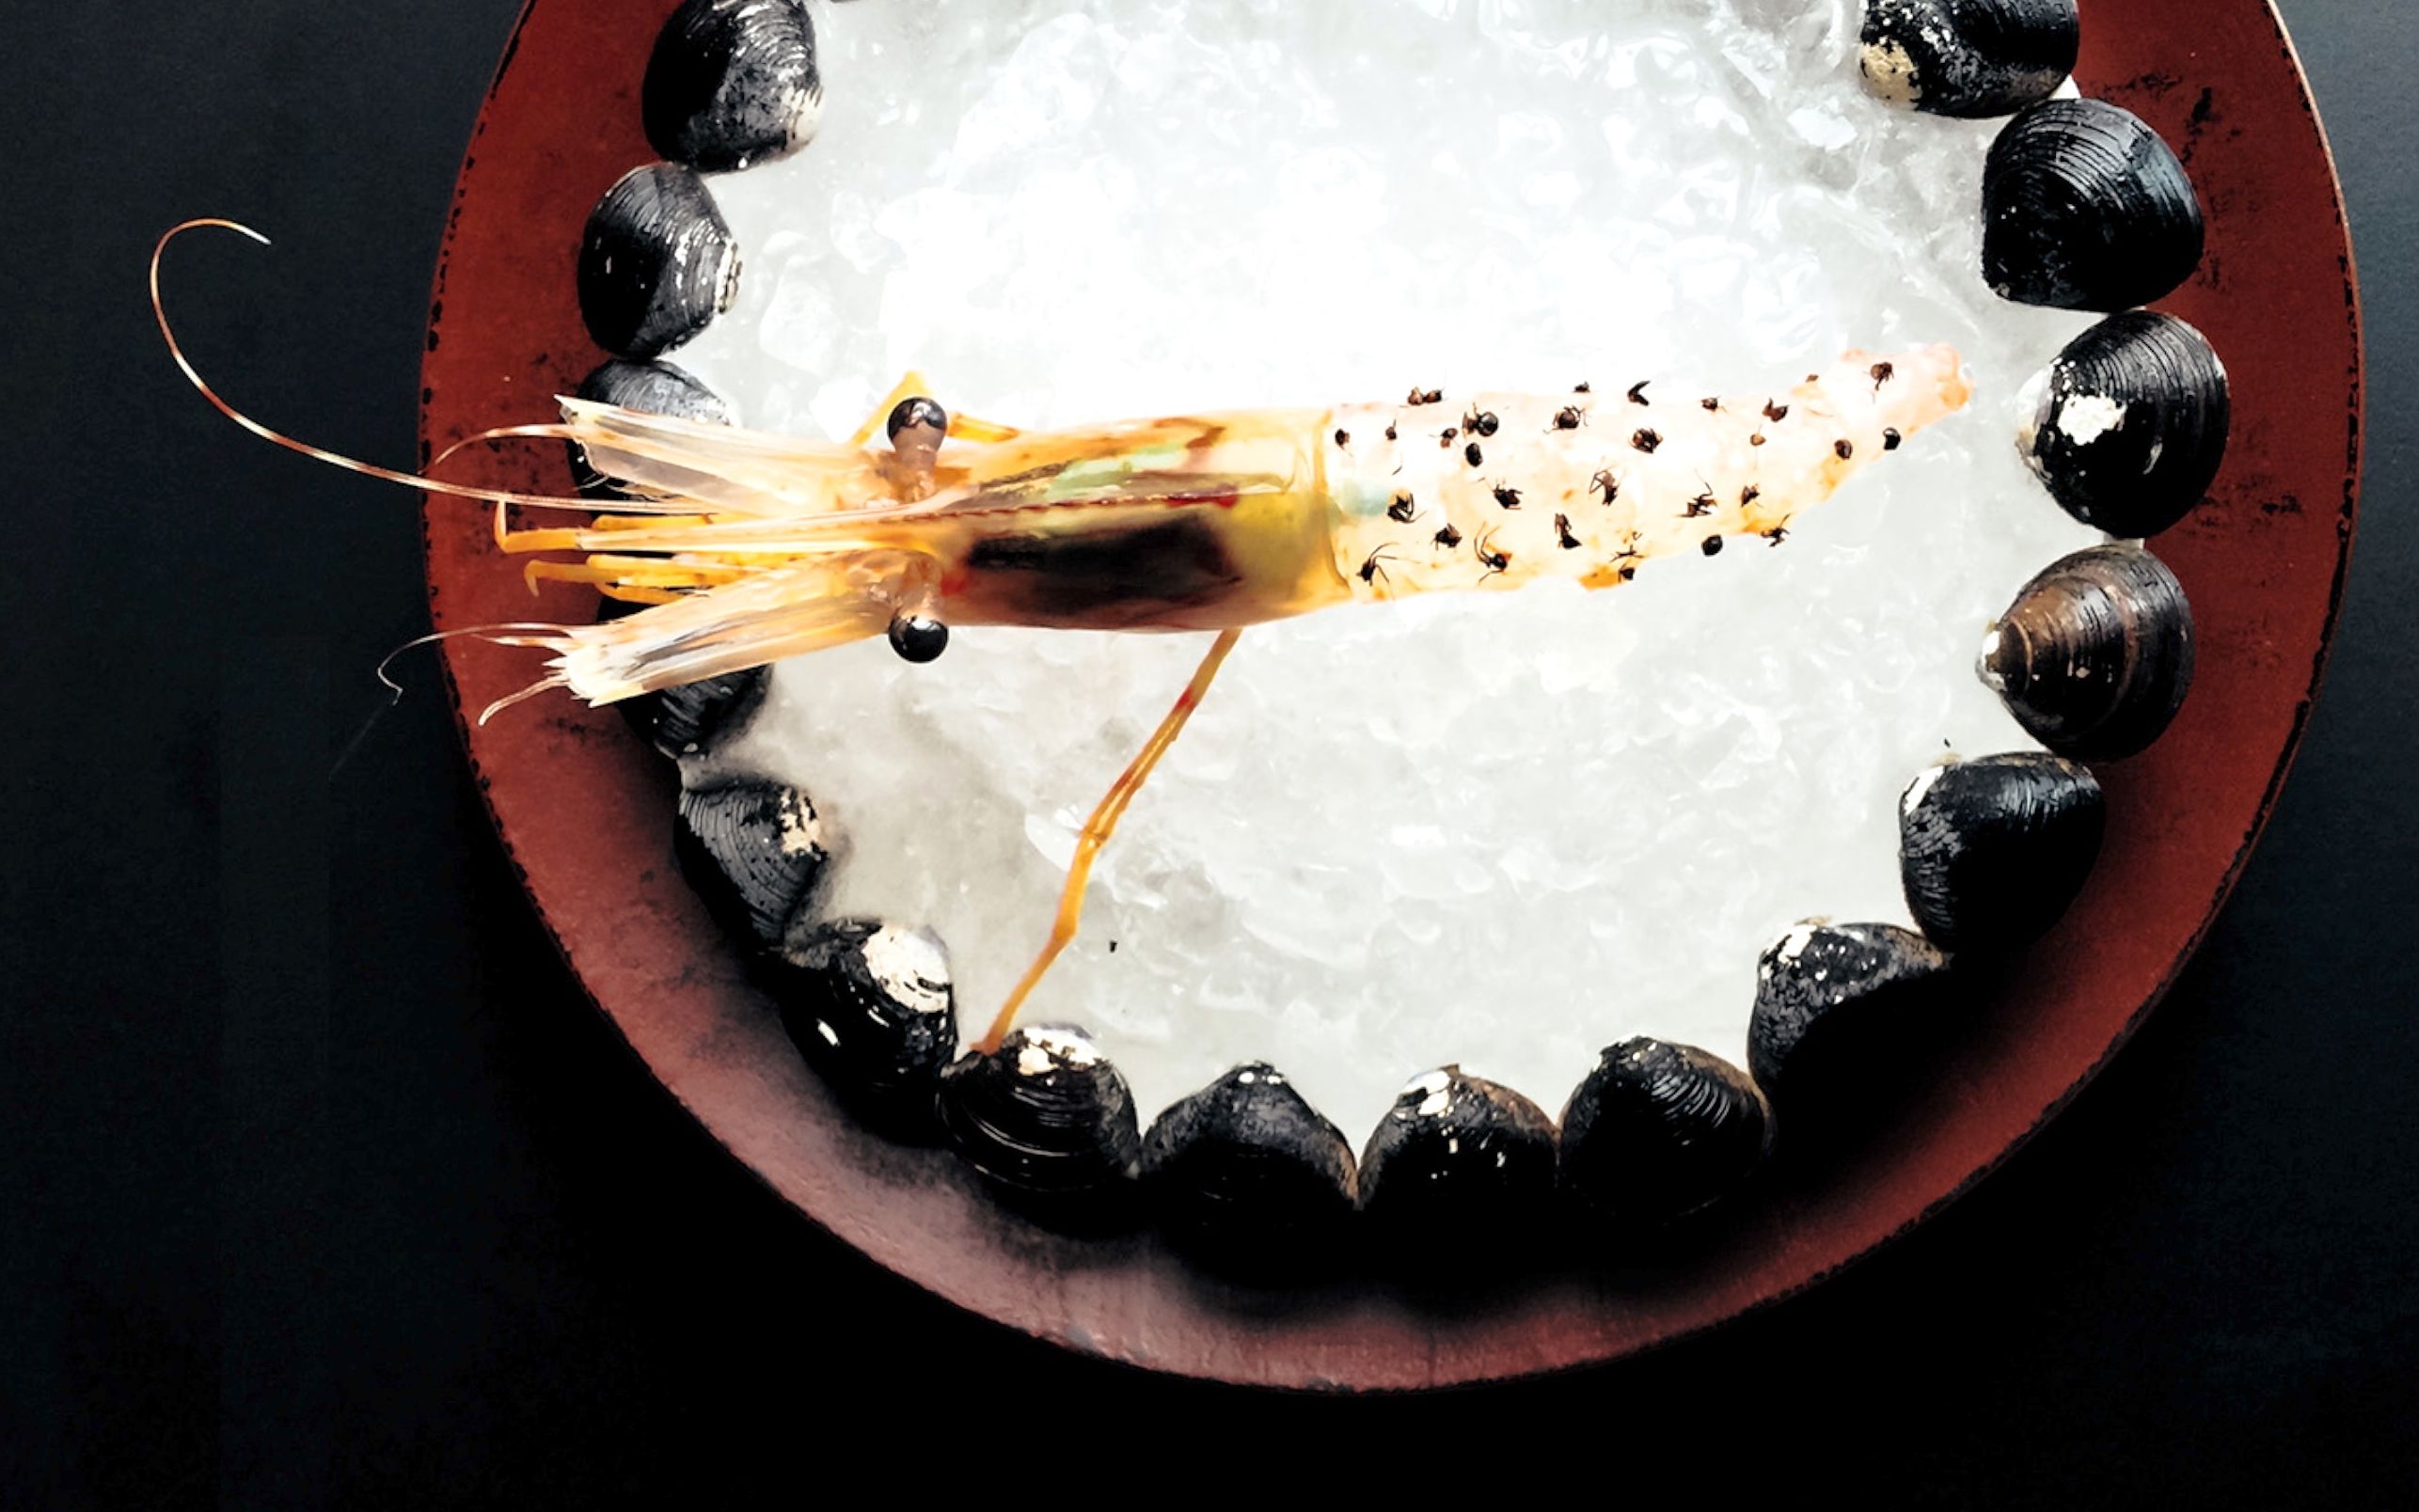 全球唯一 米其林料理 虾上蚂蚁 复刻出来会什么味道？